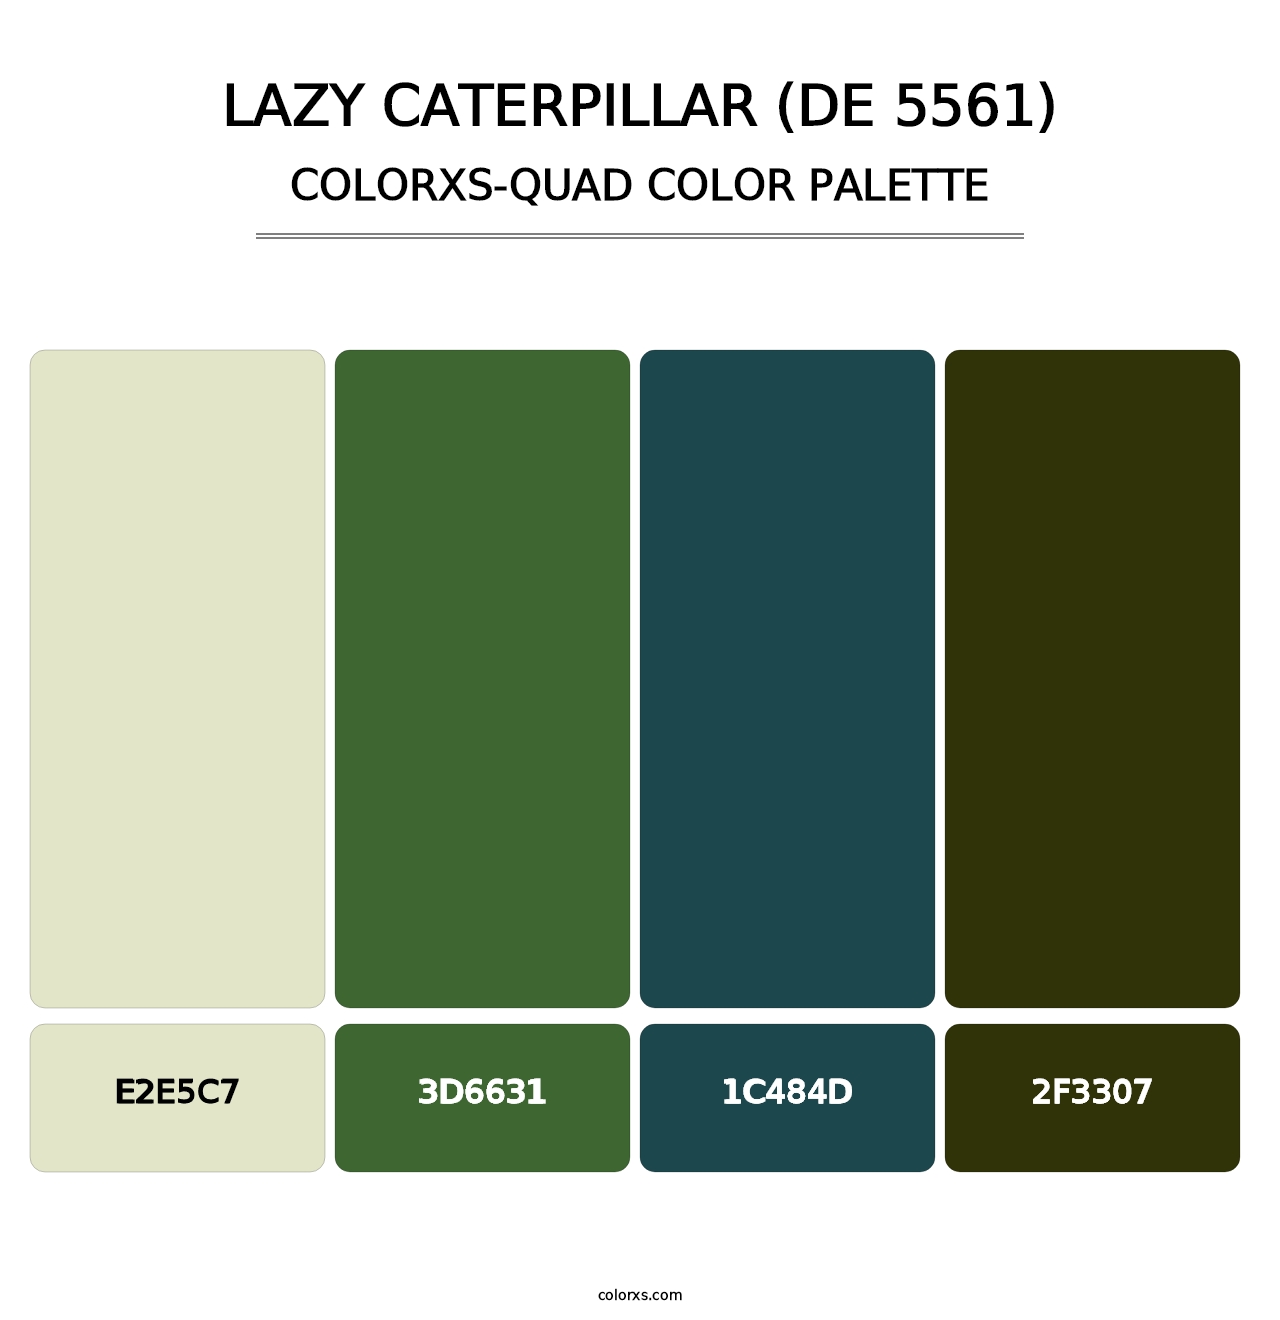 Lazy Caterpillar (DE 5561) - Colorxs Quad Palette